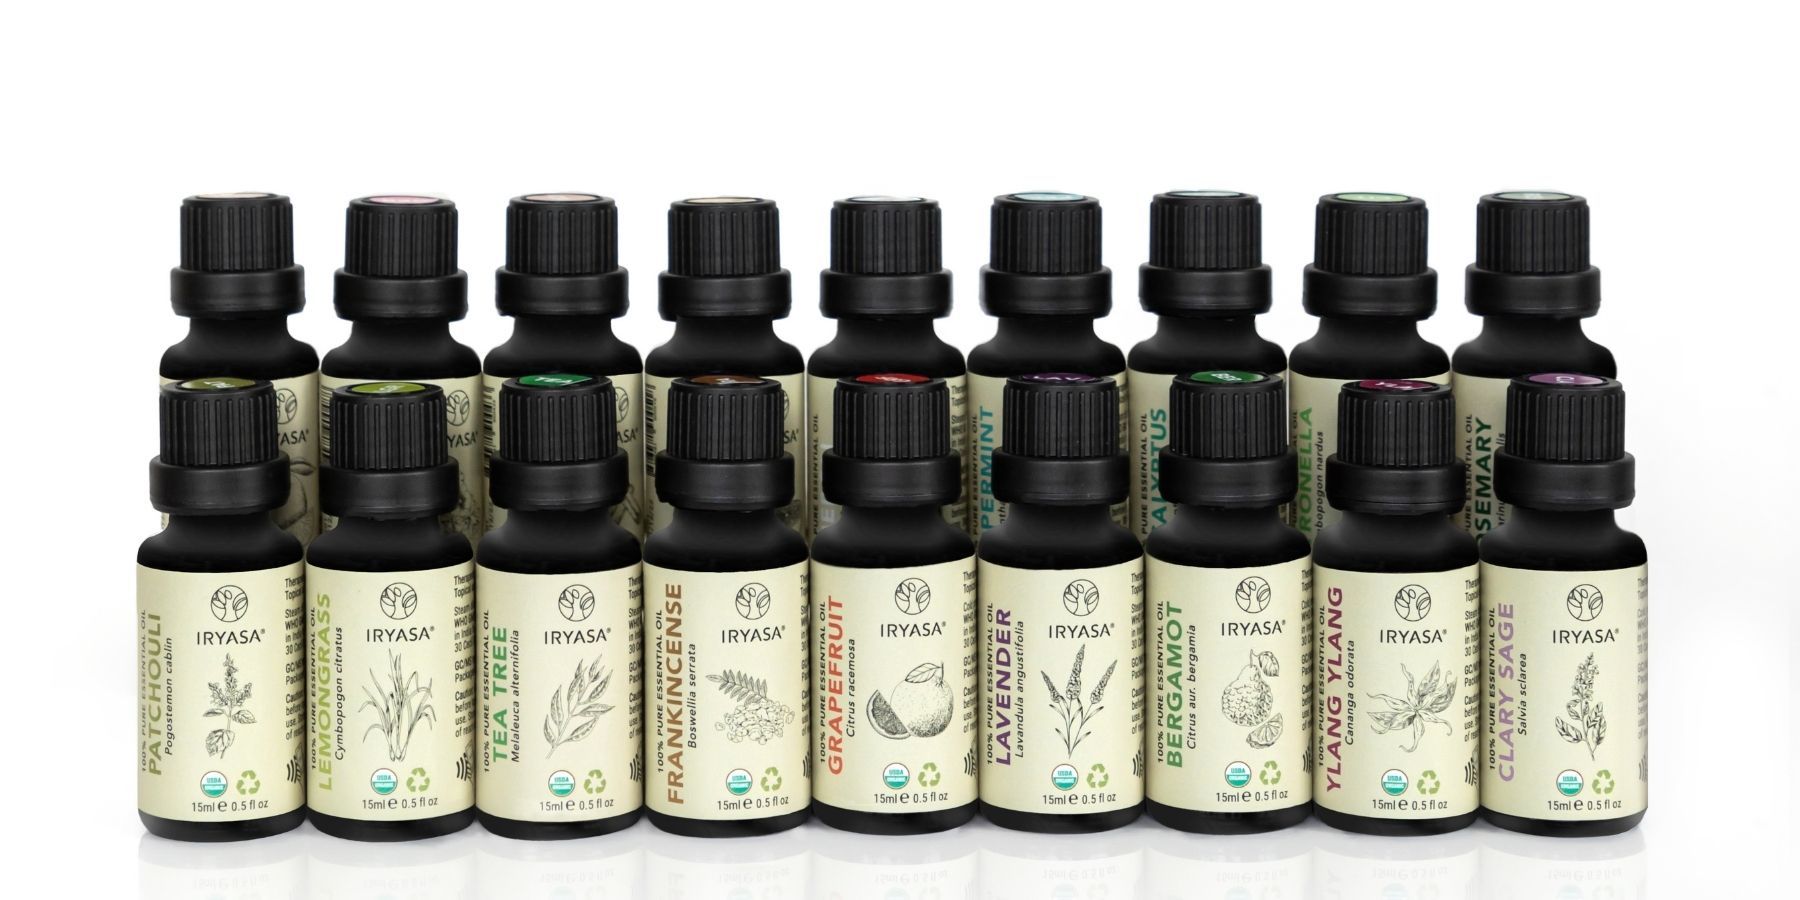 Iryasa Aromatherapy Essential Oils Collection